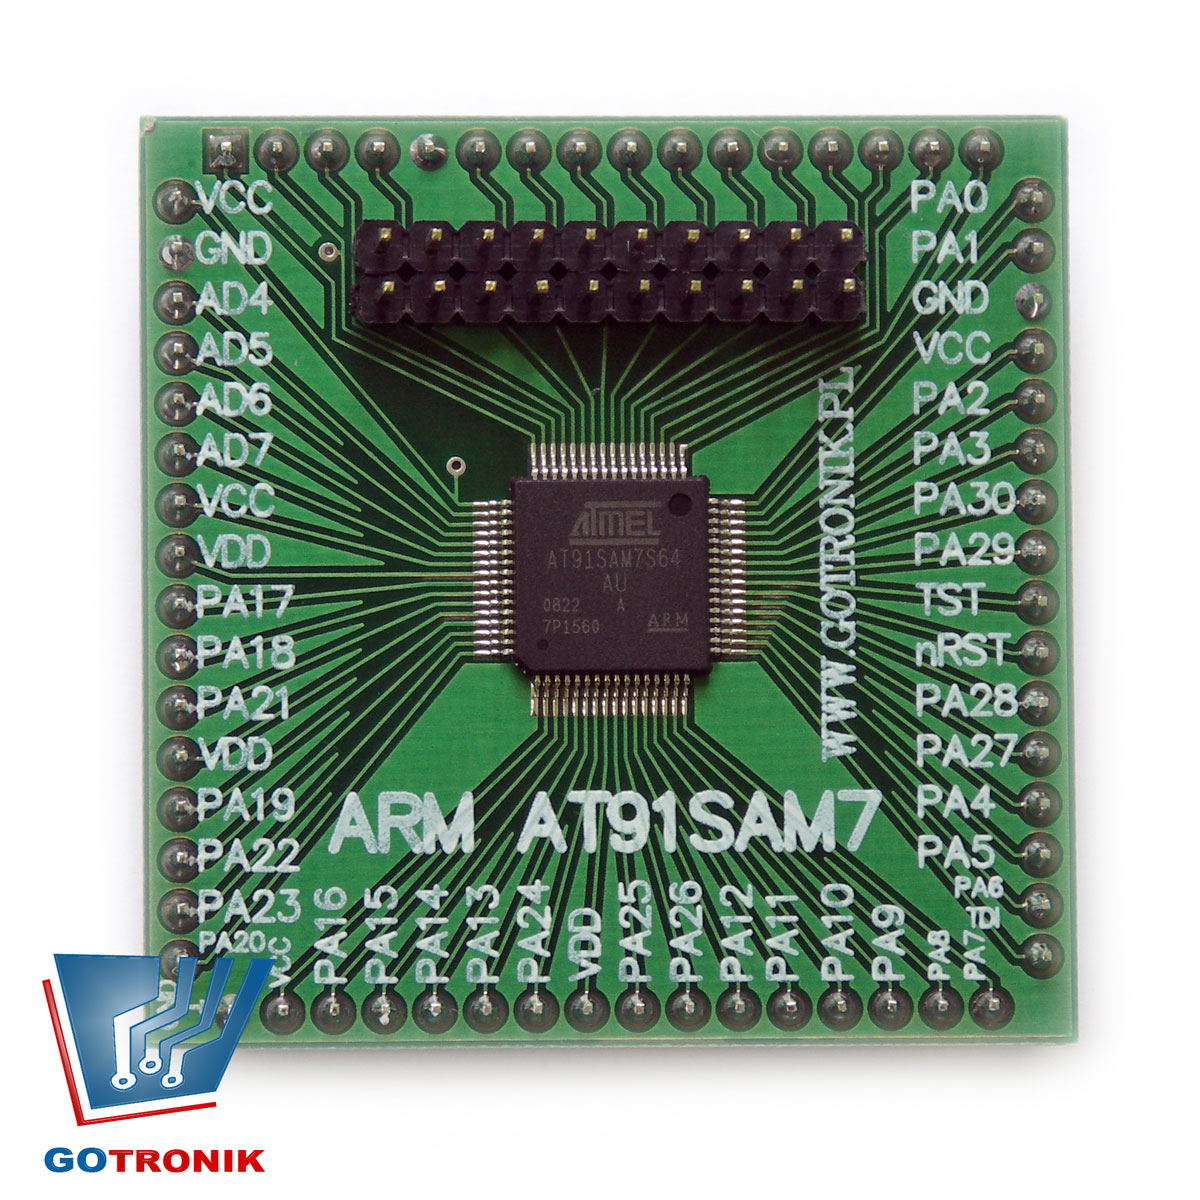 Mini moduł z procesorem ARM AT91SAM7S64